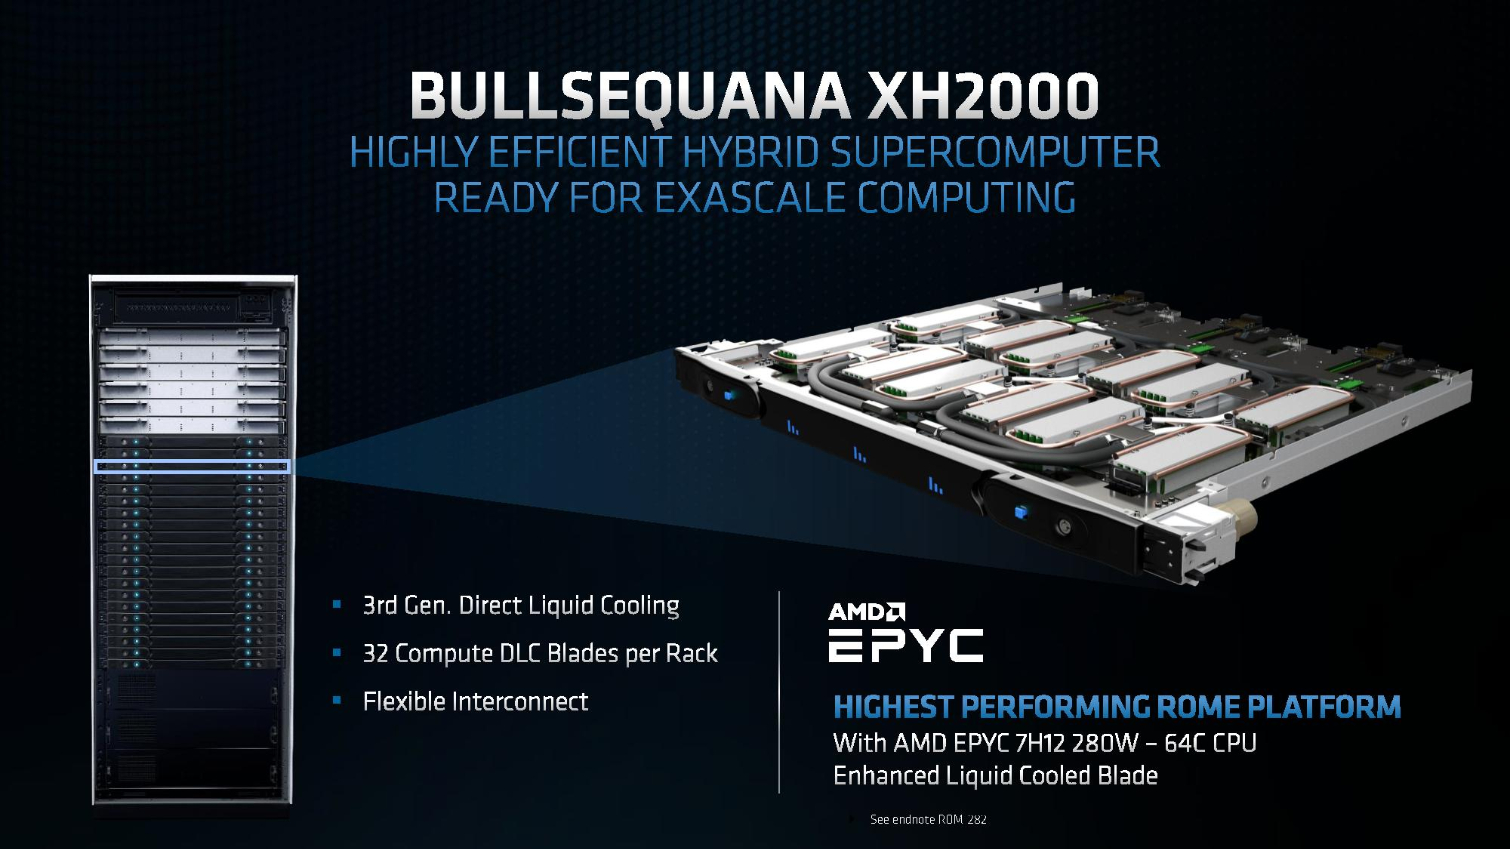 64 ядра частотой 2,6 ГГц и TDP 280 Вт — представлен новый топовый серверный процессор AMD Epyc 7H12 на архитектуре Zen 2